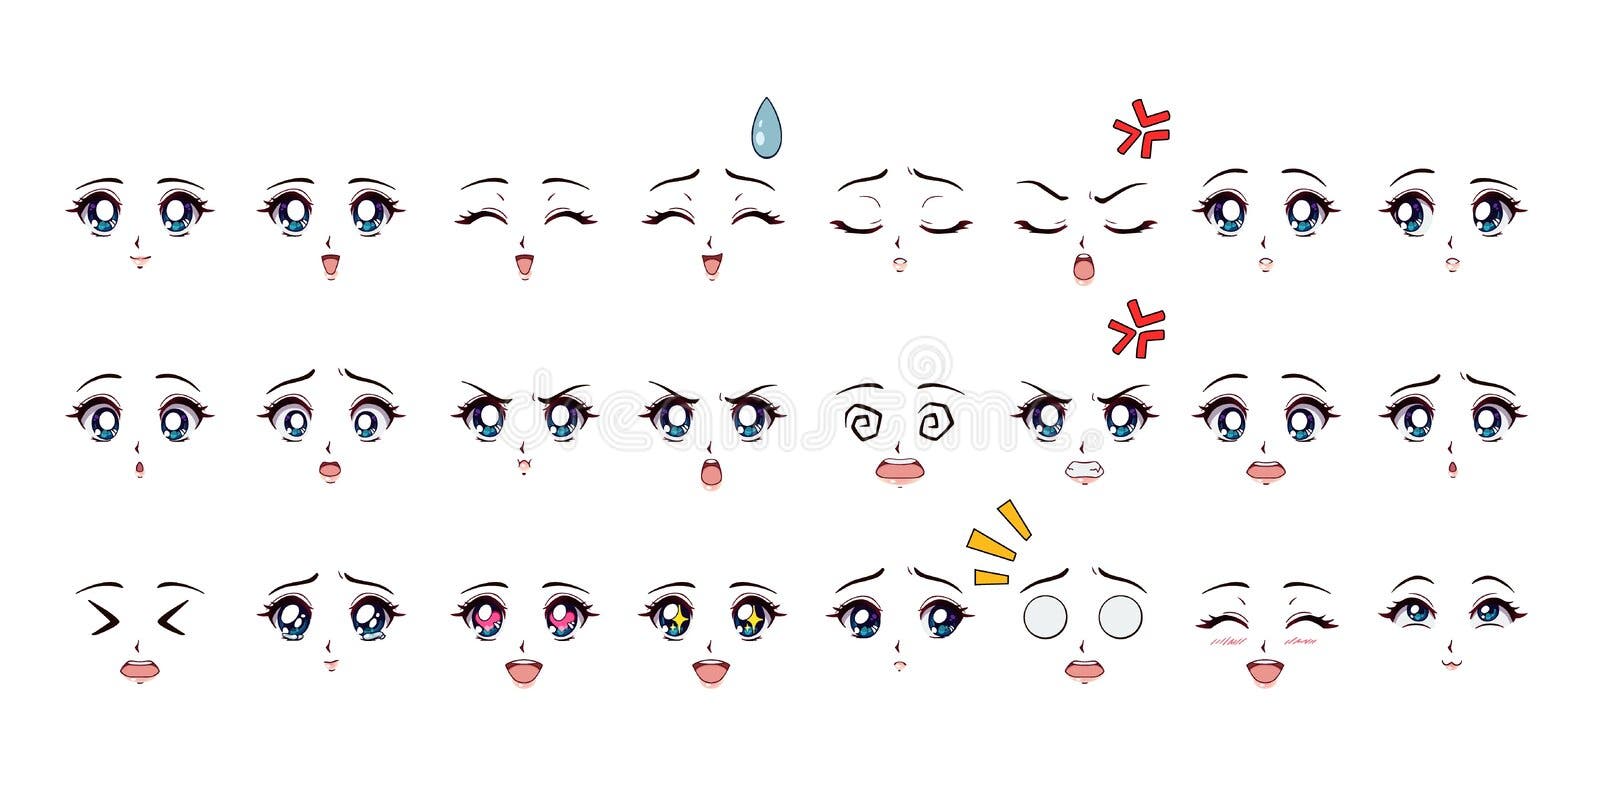 Vetores de Retrato Rosto Mangá Anime Masculino Cabelos Ruivos Olhos  Expressão e mais imagens de Estilo Mangá - iStock